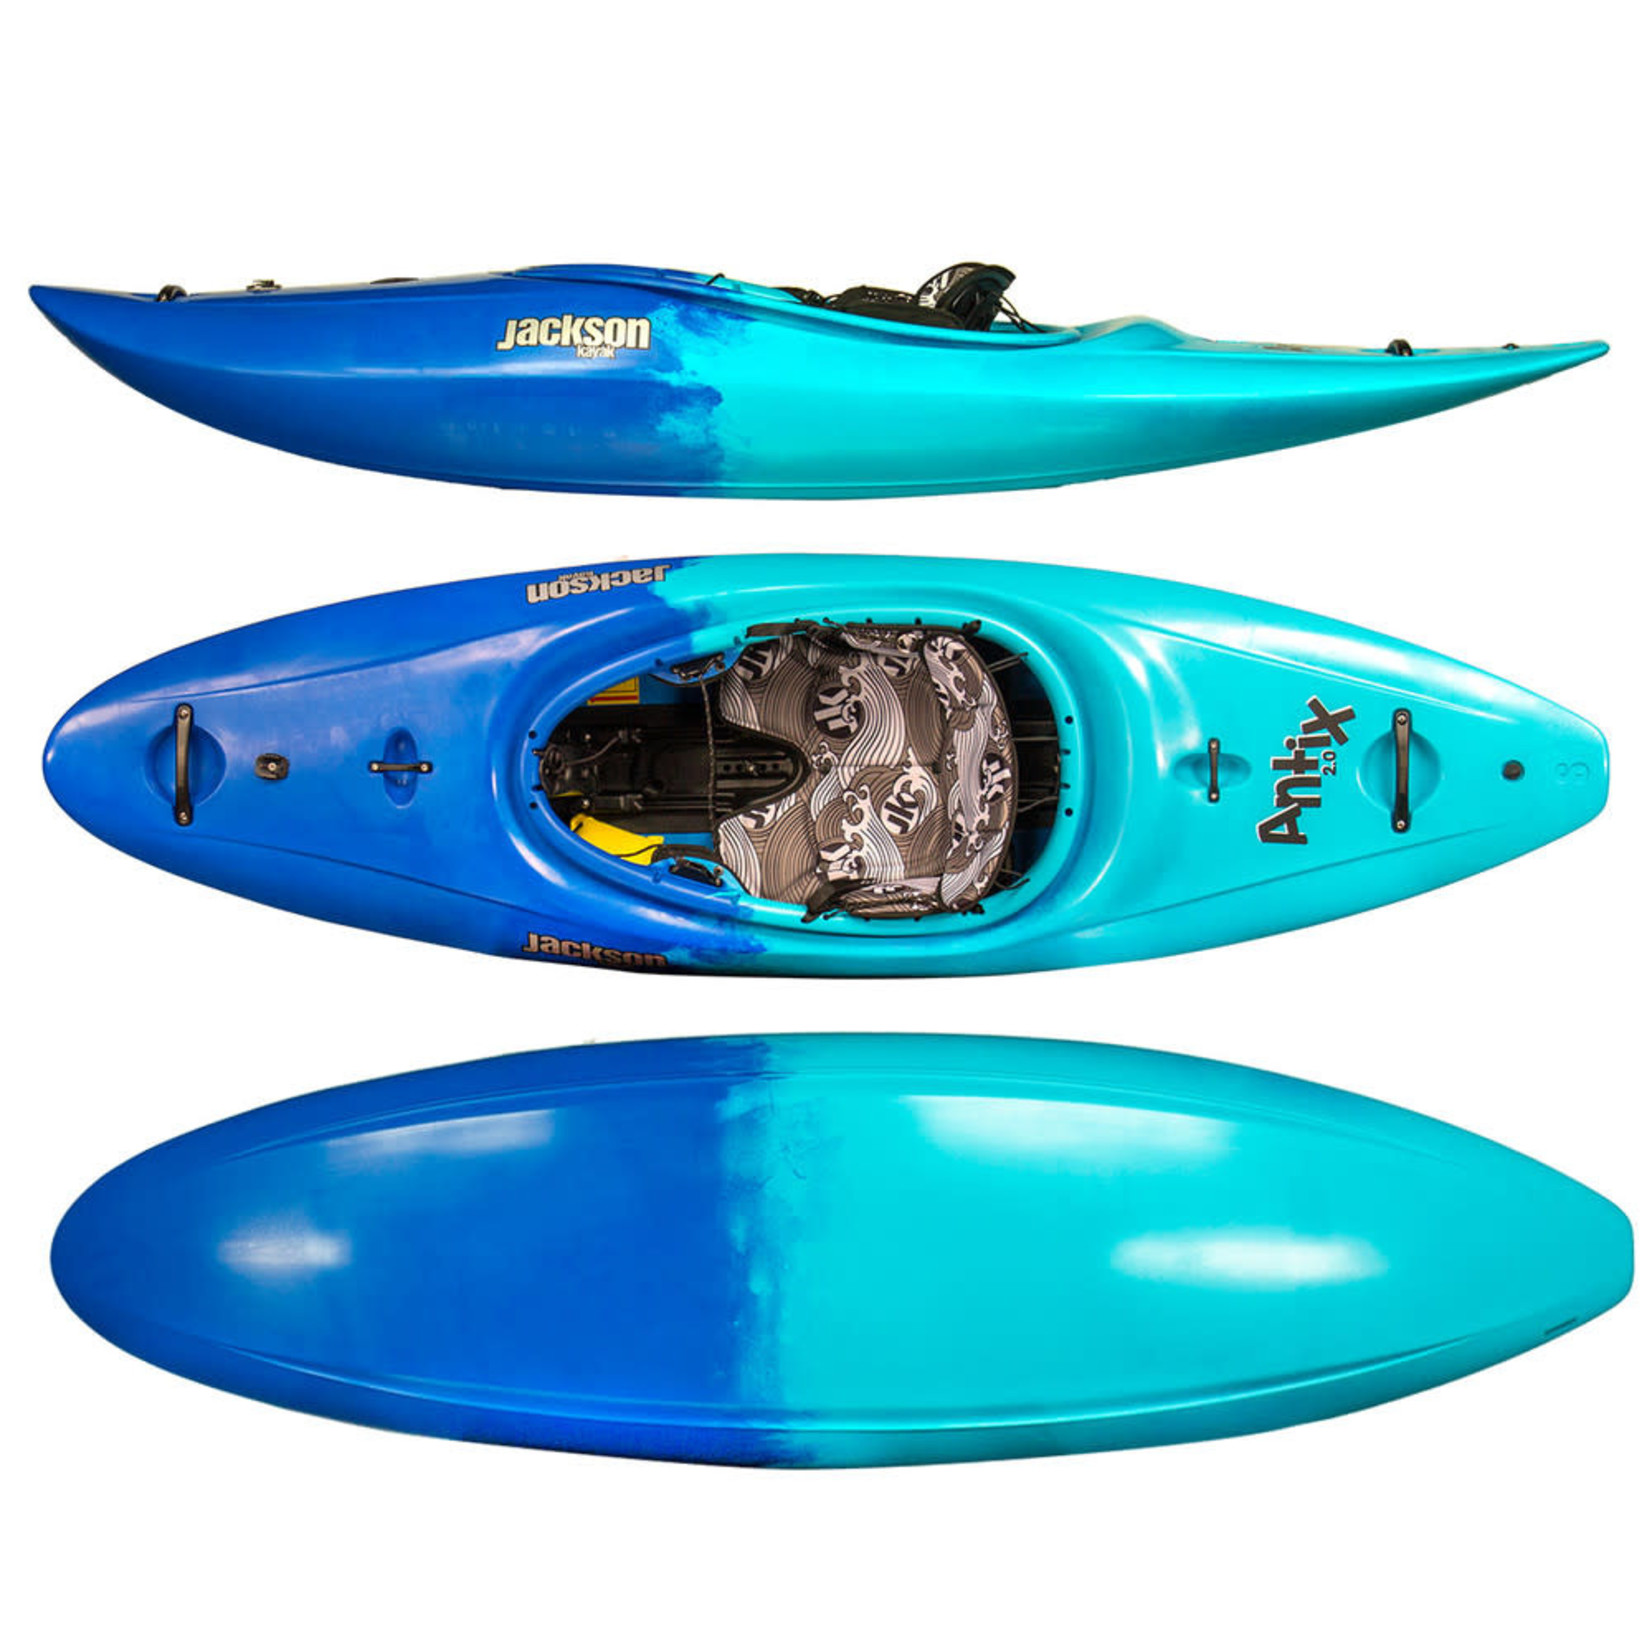 Jackson Kayak Jackson Kayak Antix 2.0